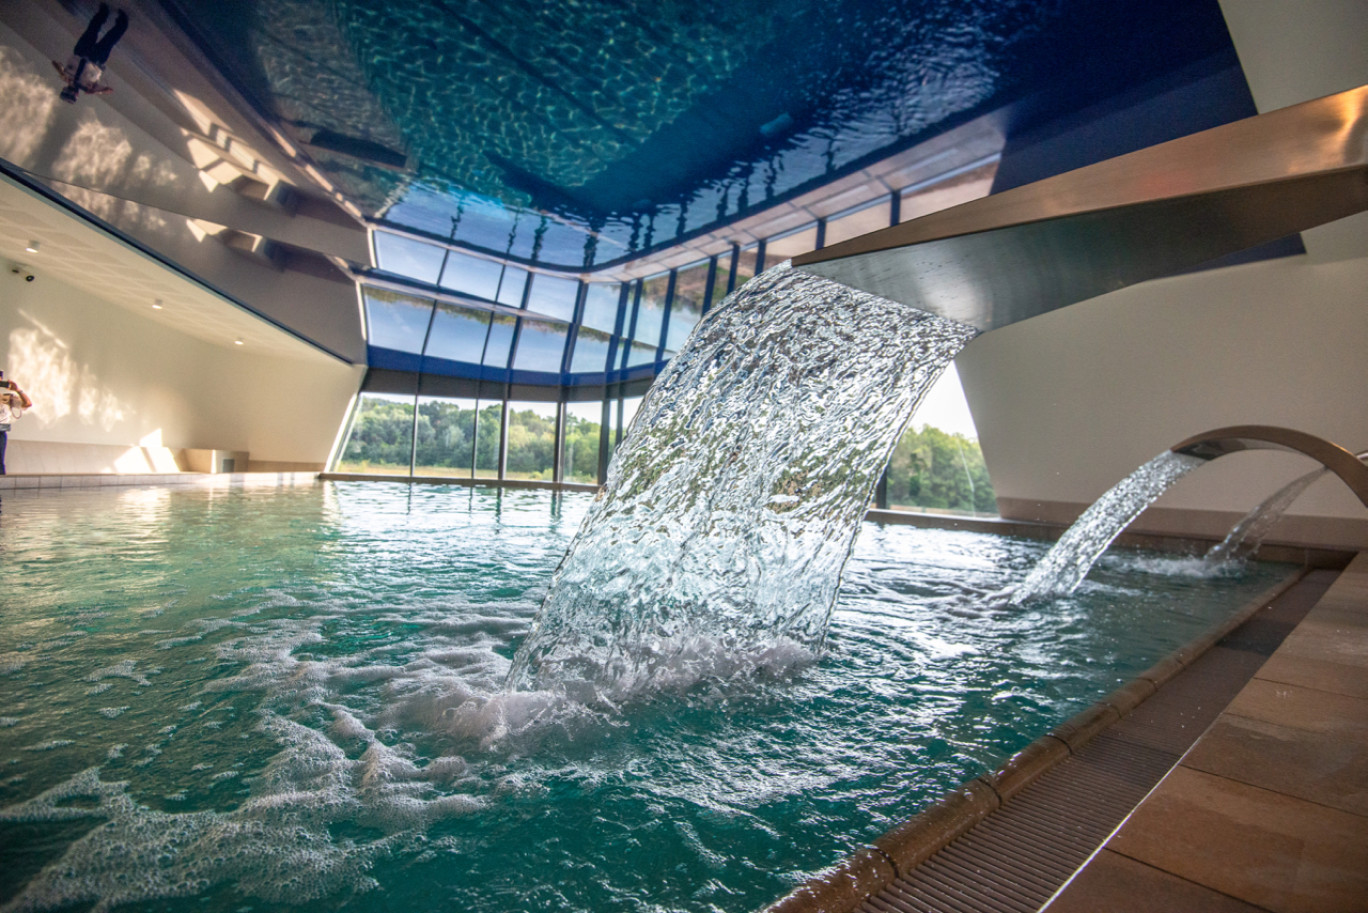 Les bassins sont chauffés grâce à un système de récupération de chaleur fatales. © Naturéo